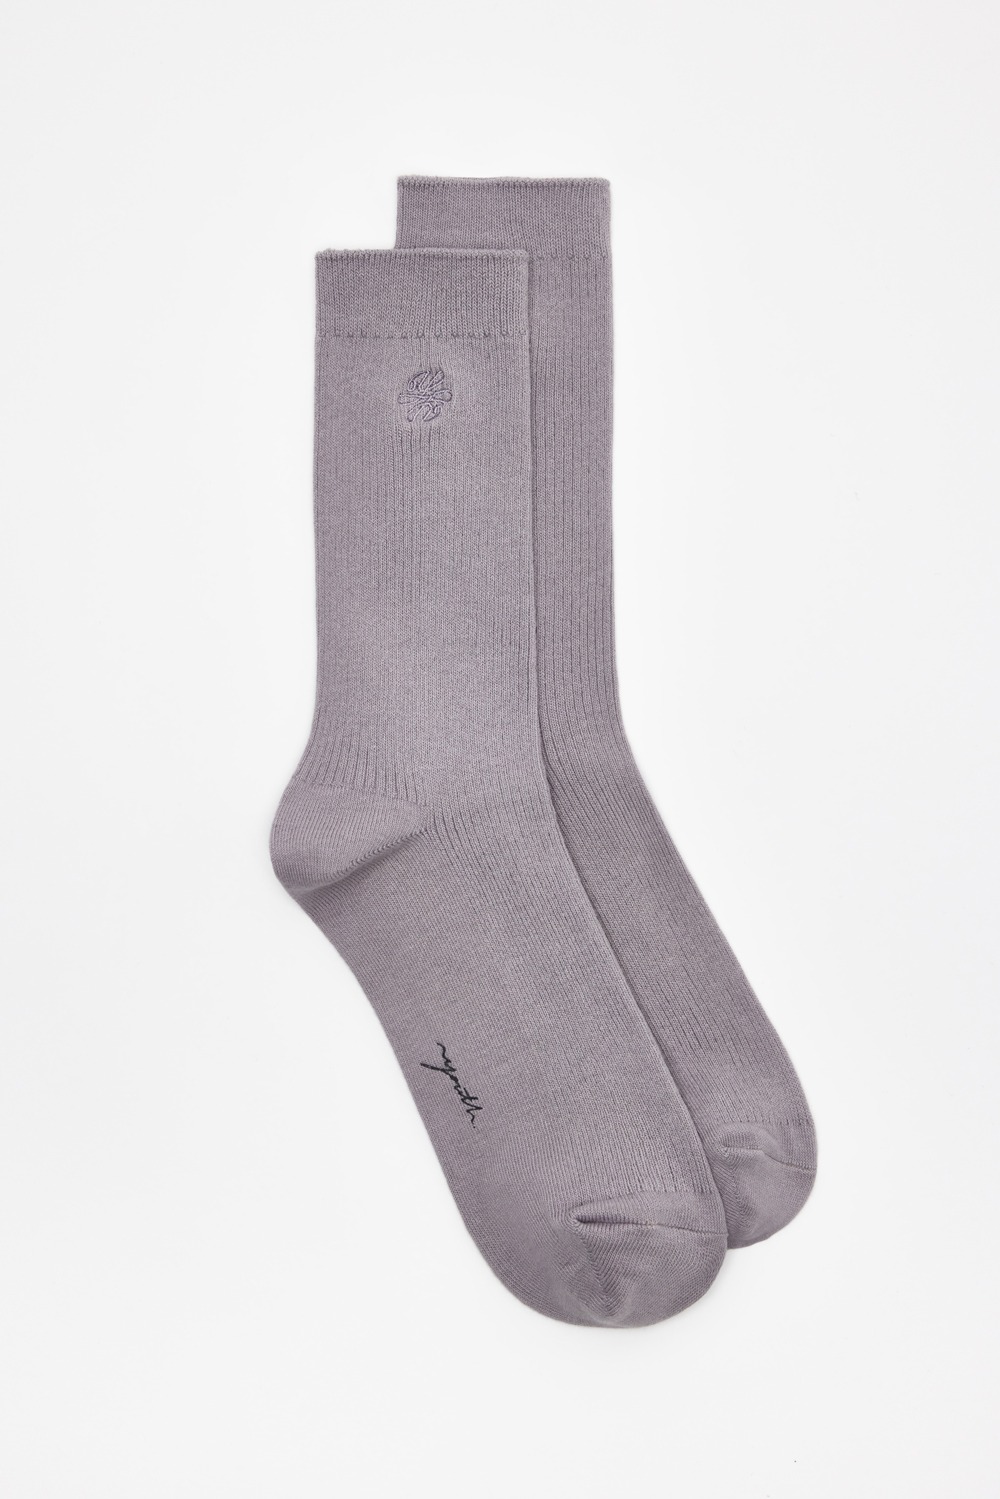 Essential Socks (Half)